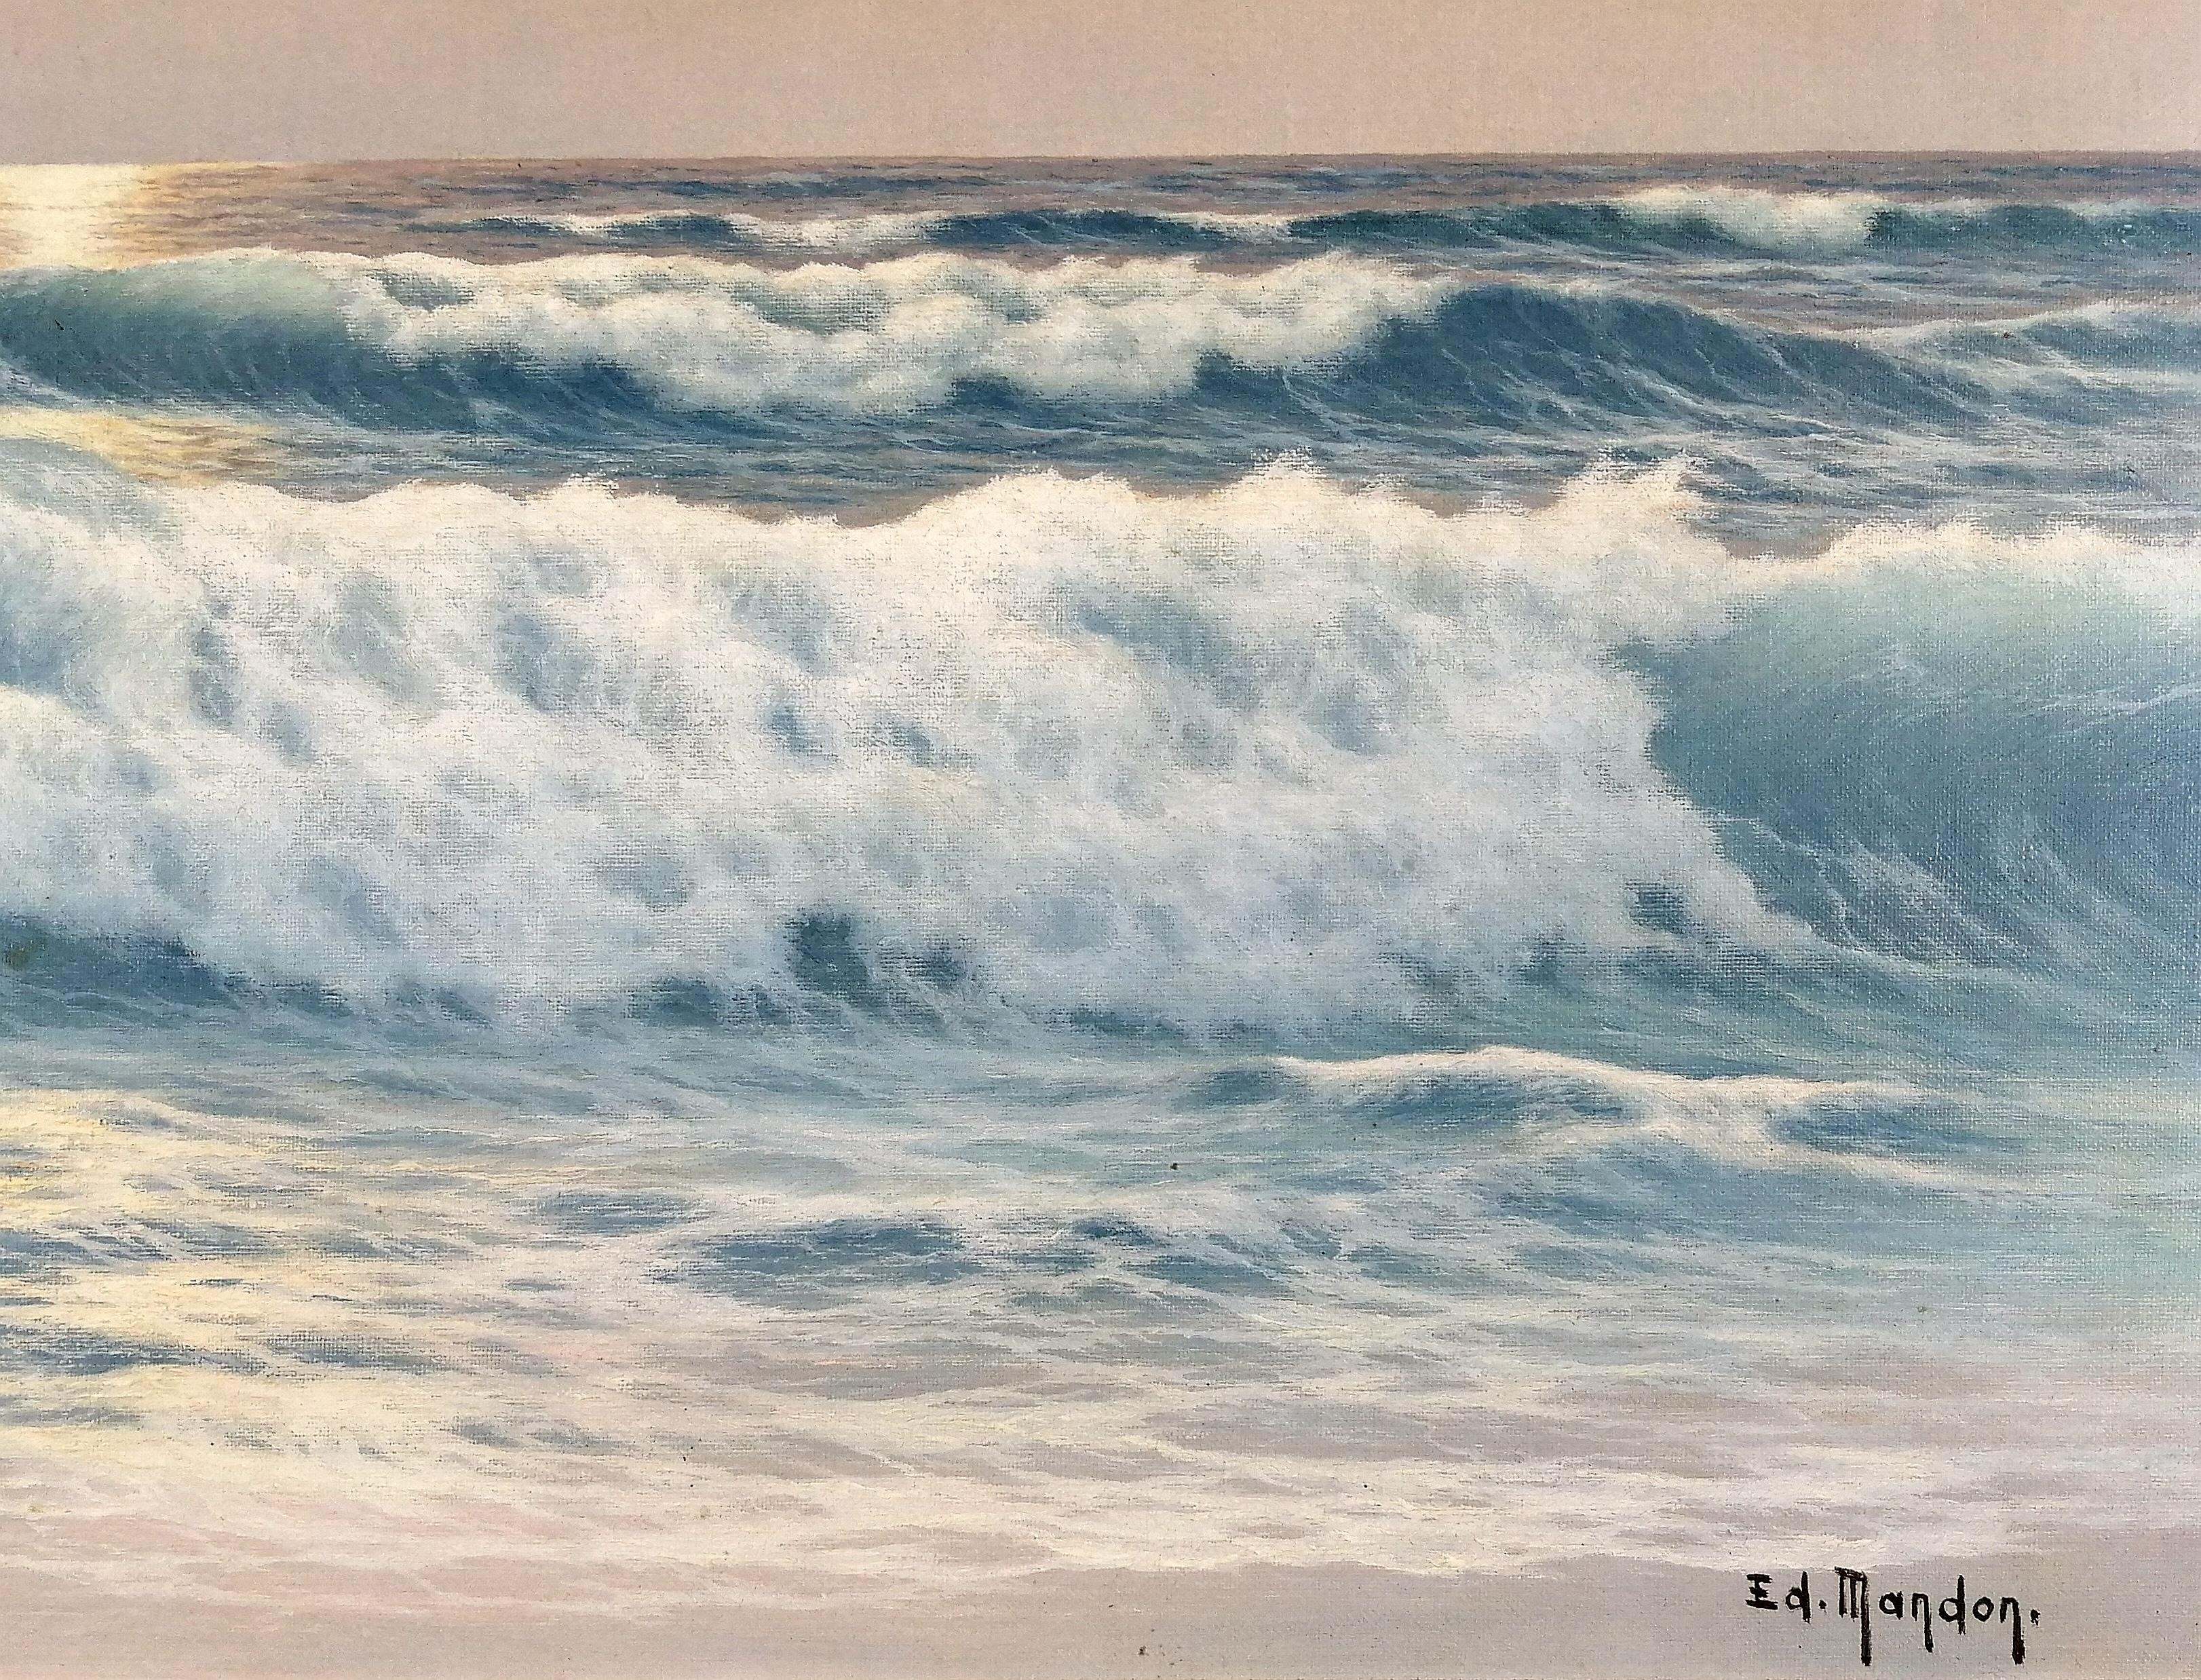 Ein schönes und sehr großes französisches Öl auf Leinwand, das einen Sonnenuntergang am Meer darstellt, von Edouard Mandon.

Ausgezeichnete Qualitätsarbeit in hervorragendem Originalzustand. Unten rechts signiert und in seinem originalen bemalten